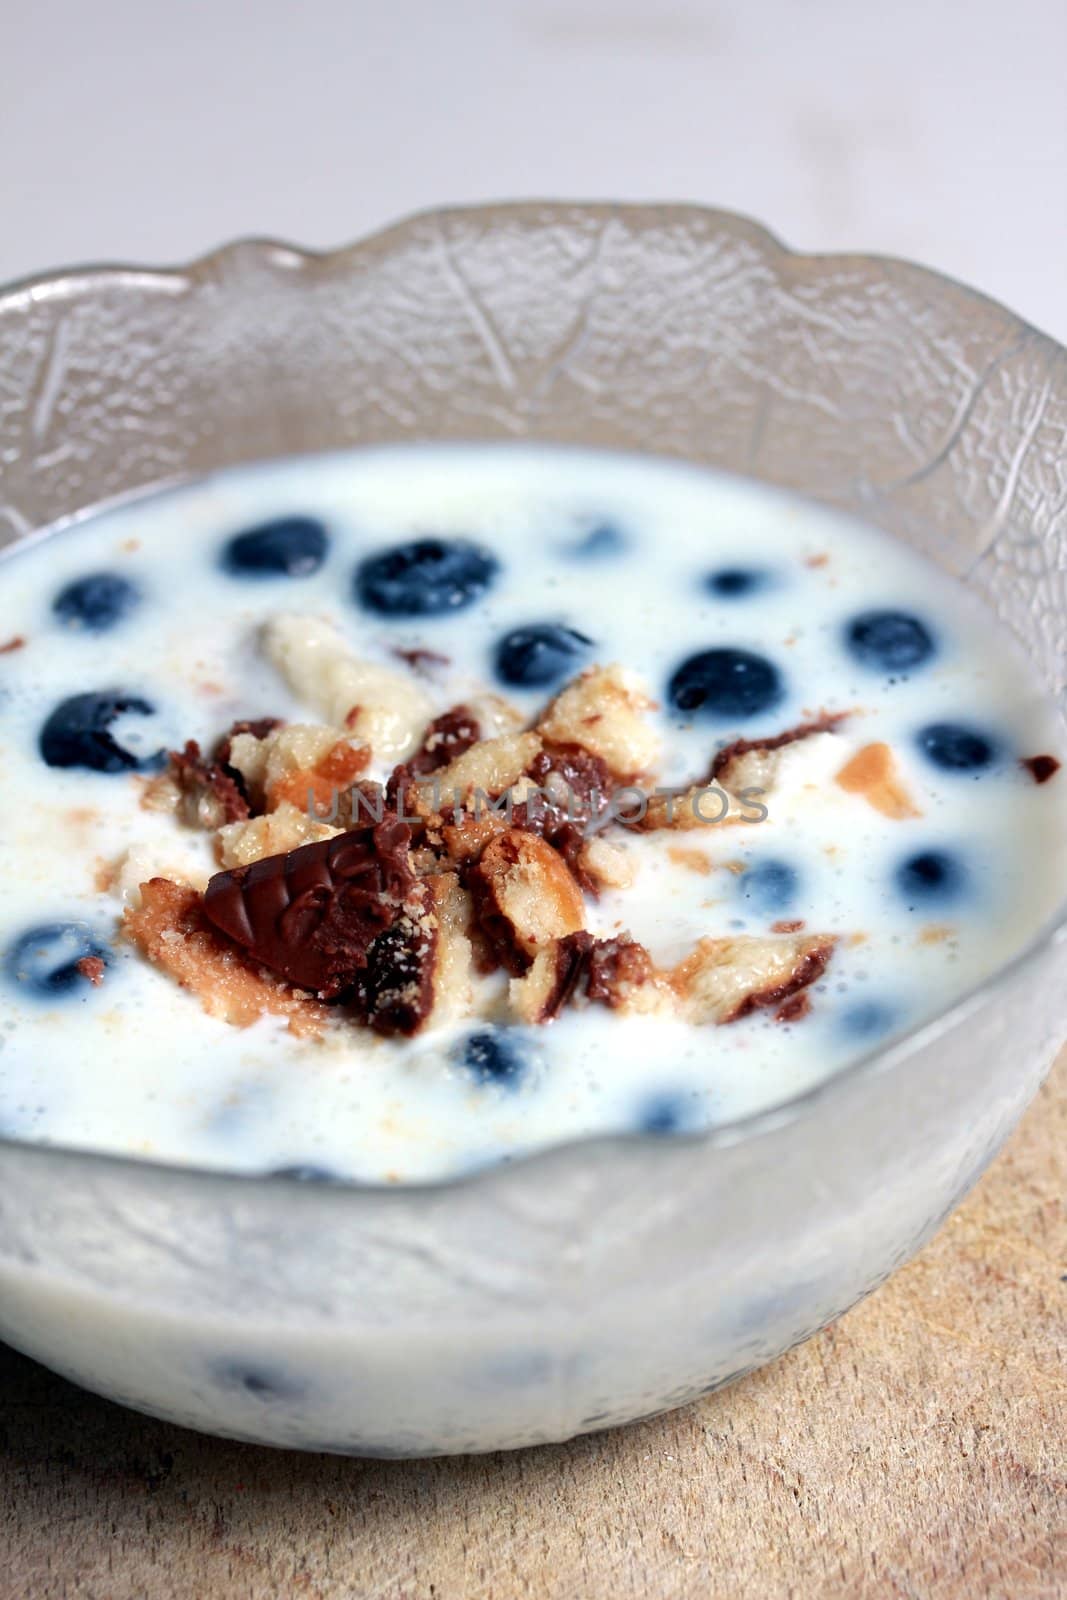 blueberries and milk dessert